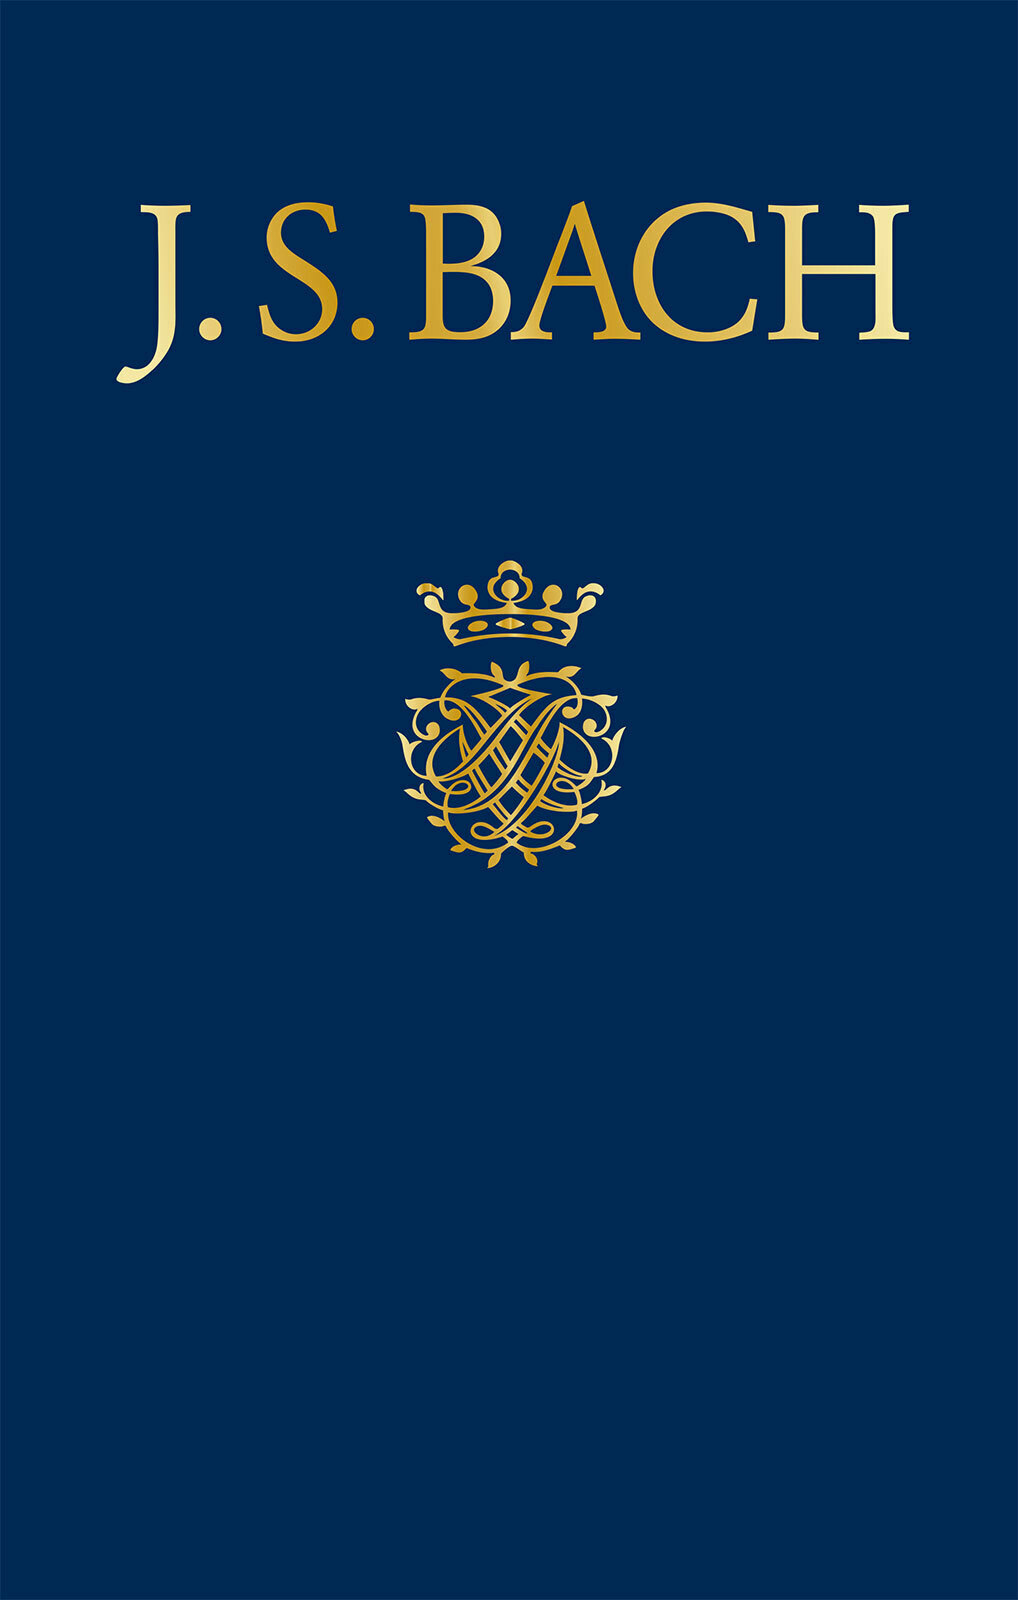 Bach-werke-verzeichnis (bwv) Bach Works Catalogue Sheet Music Songbook